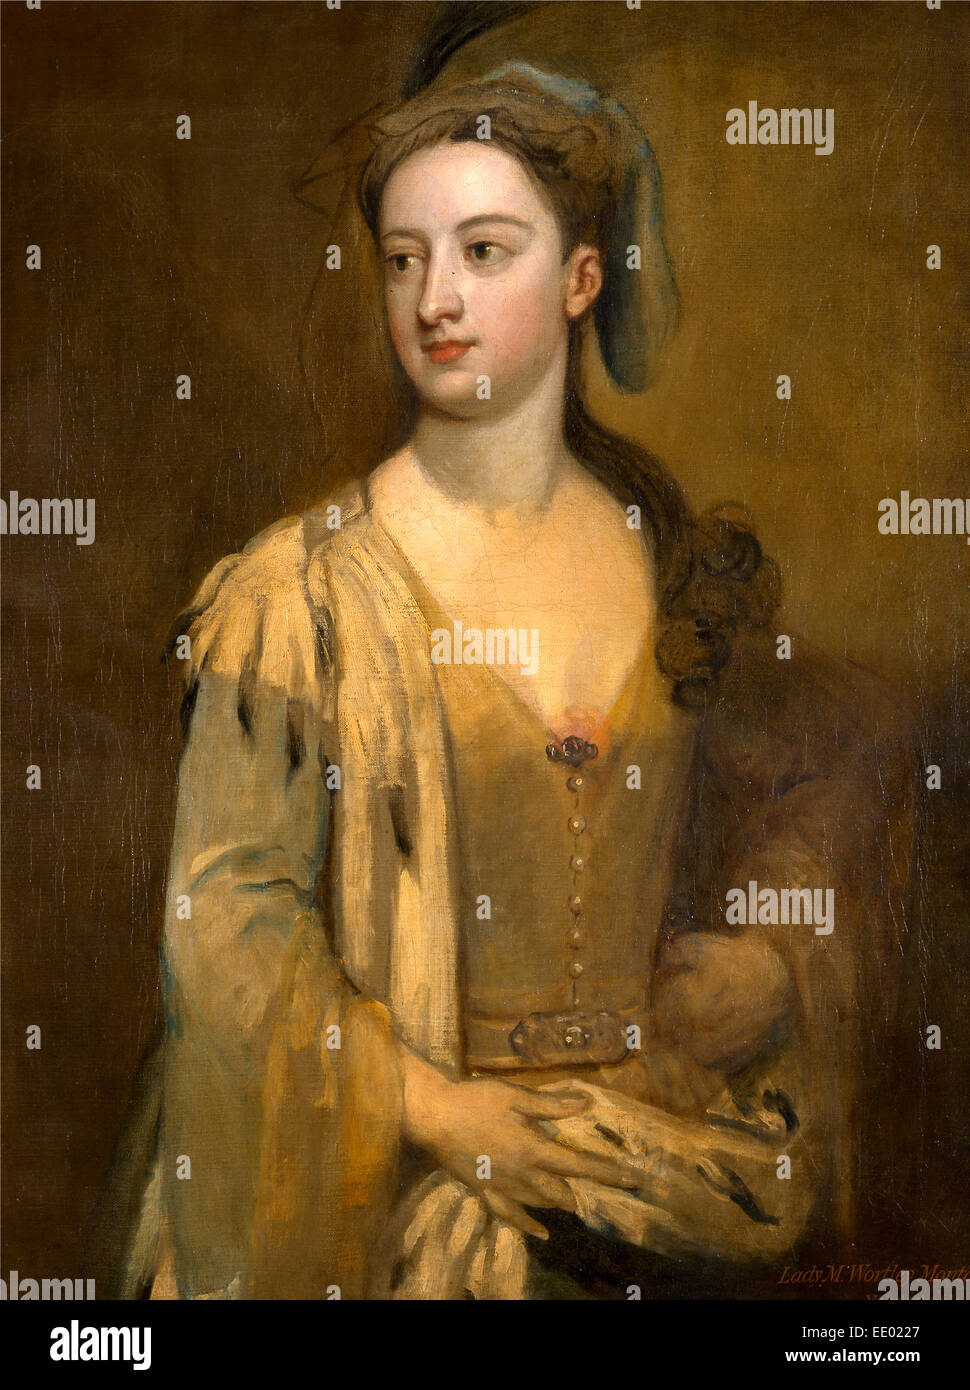 Une femme appelée Lady Mary Wortley Montagu inscrit dans la peinture à l'ocre rouge, en bas à droite : "Lady M. Wortley Montagu. | Vanderbank.' Banque D'Images